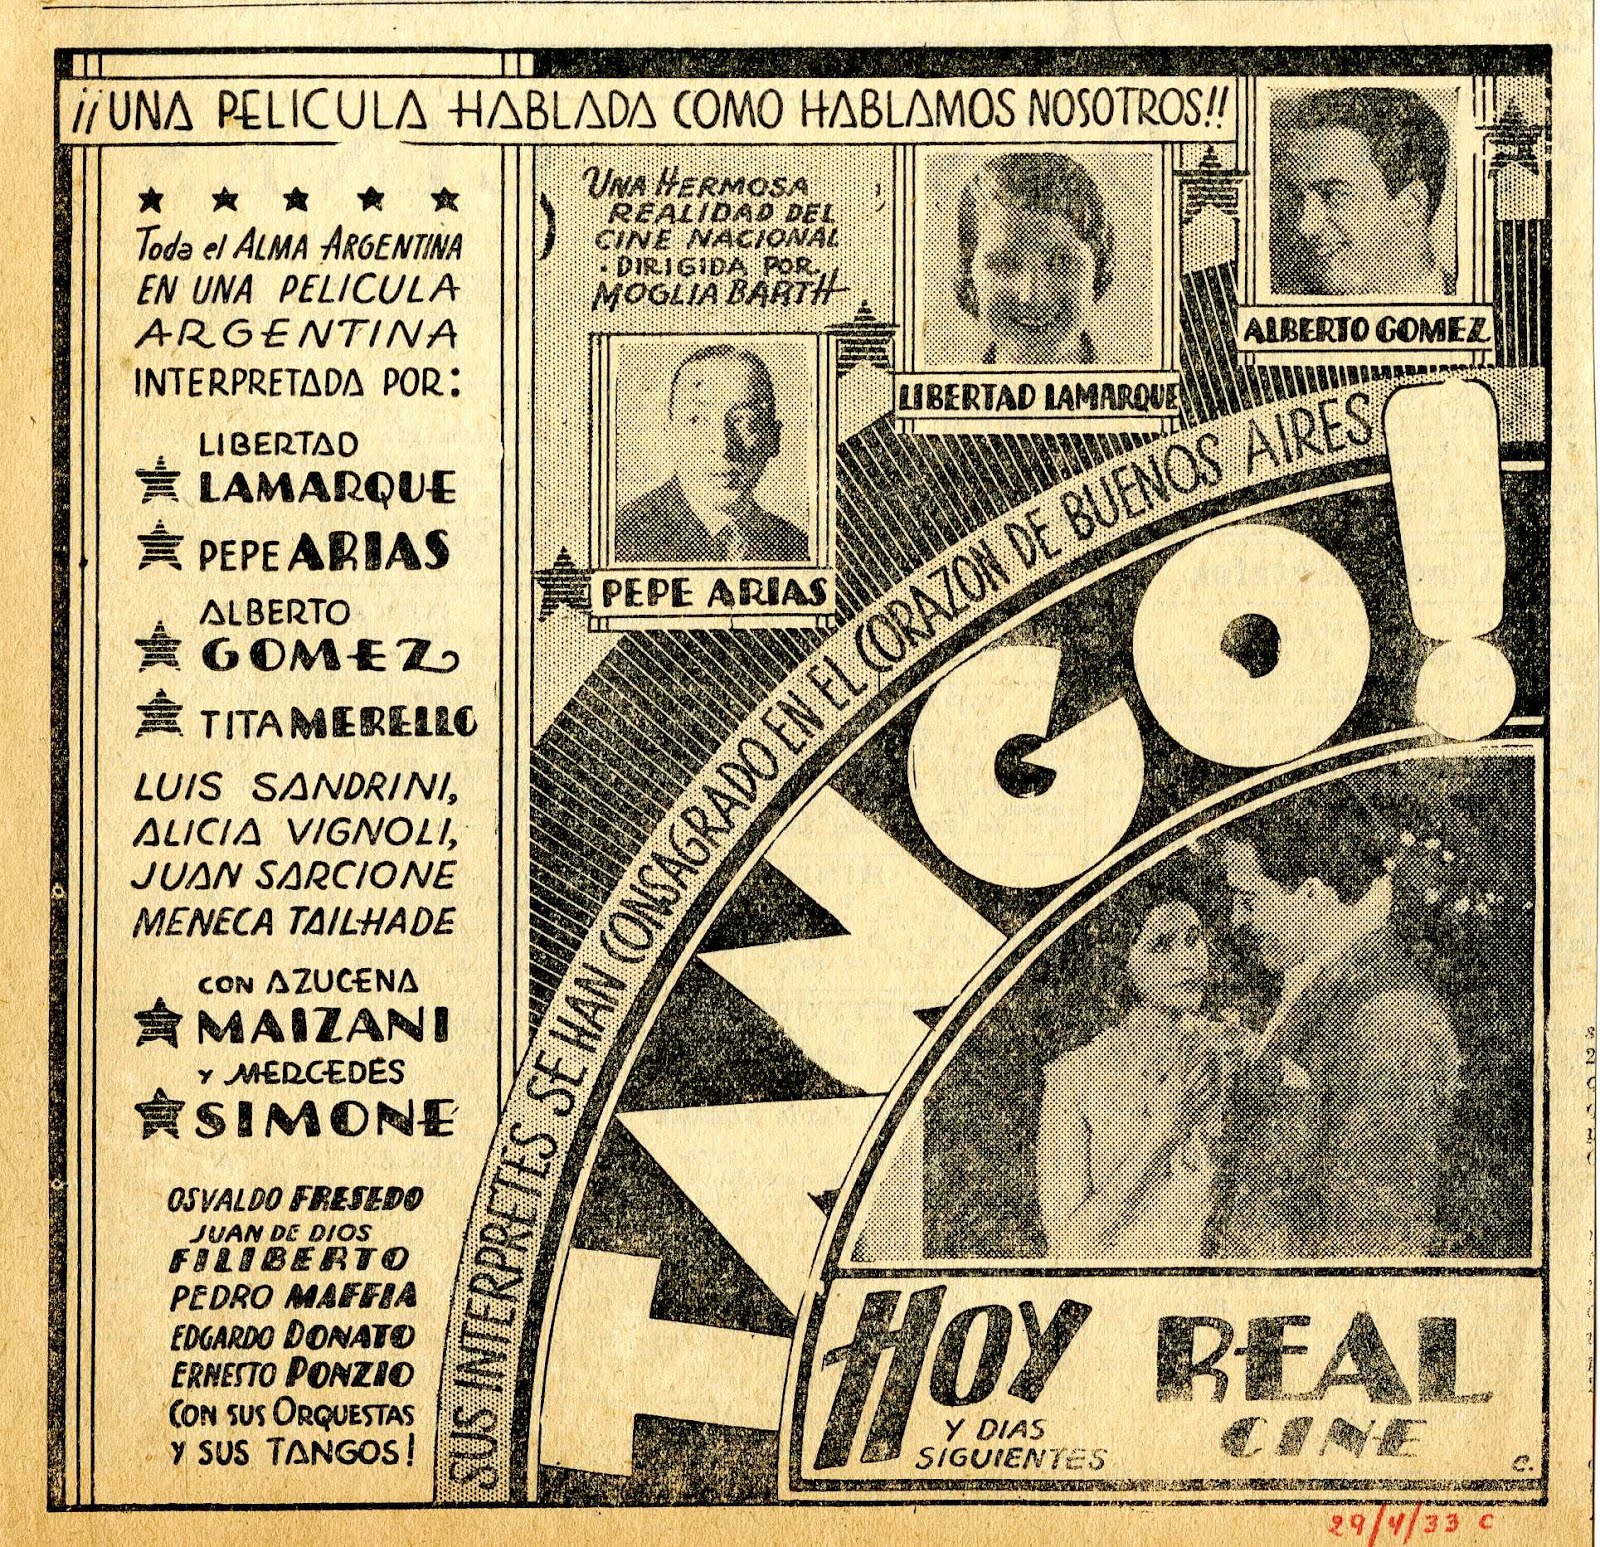 * Tango! la primer película sonora Argentina se estrenaba en 1933